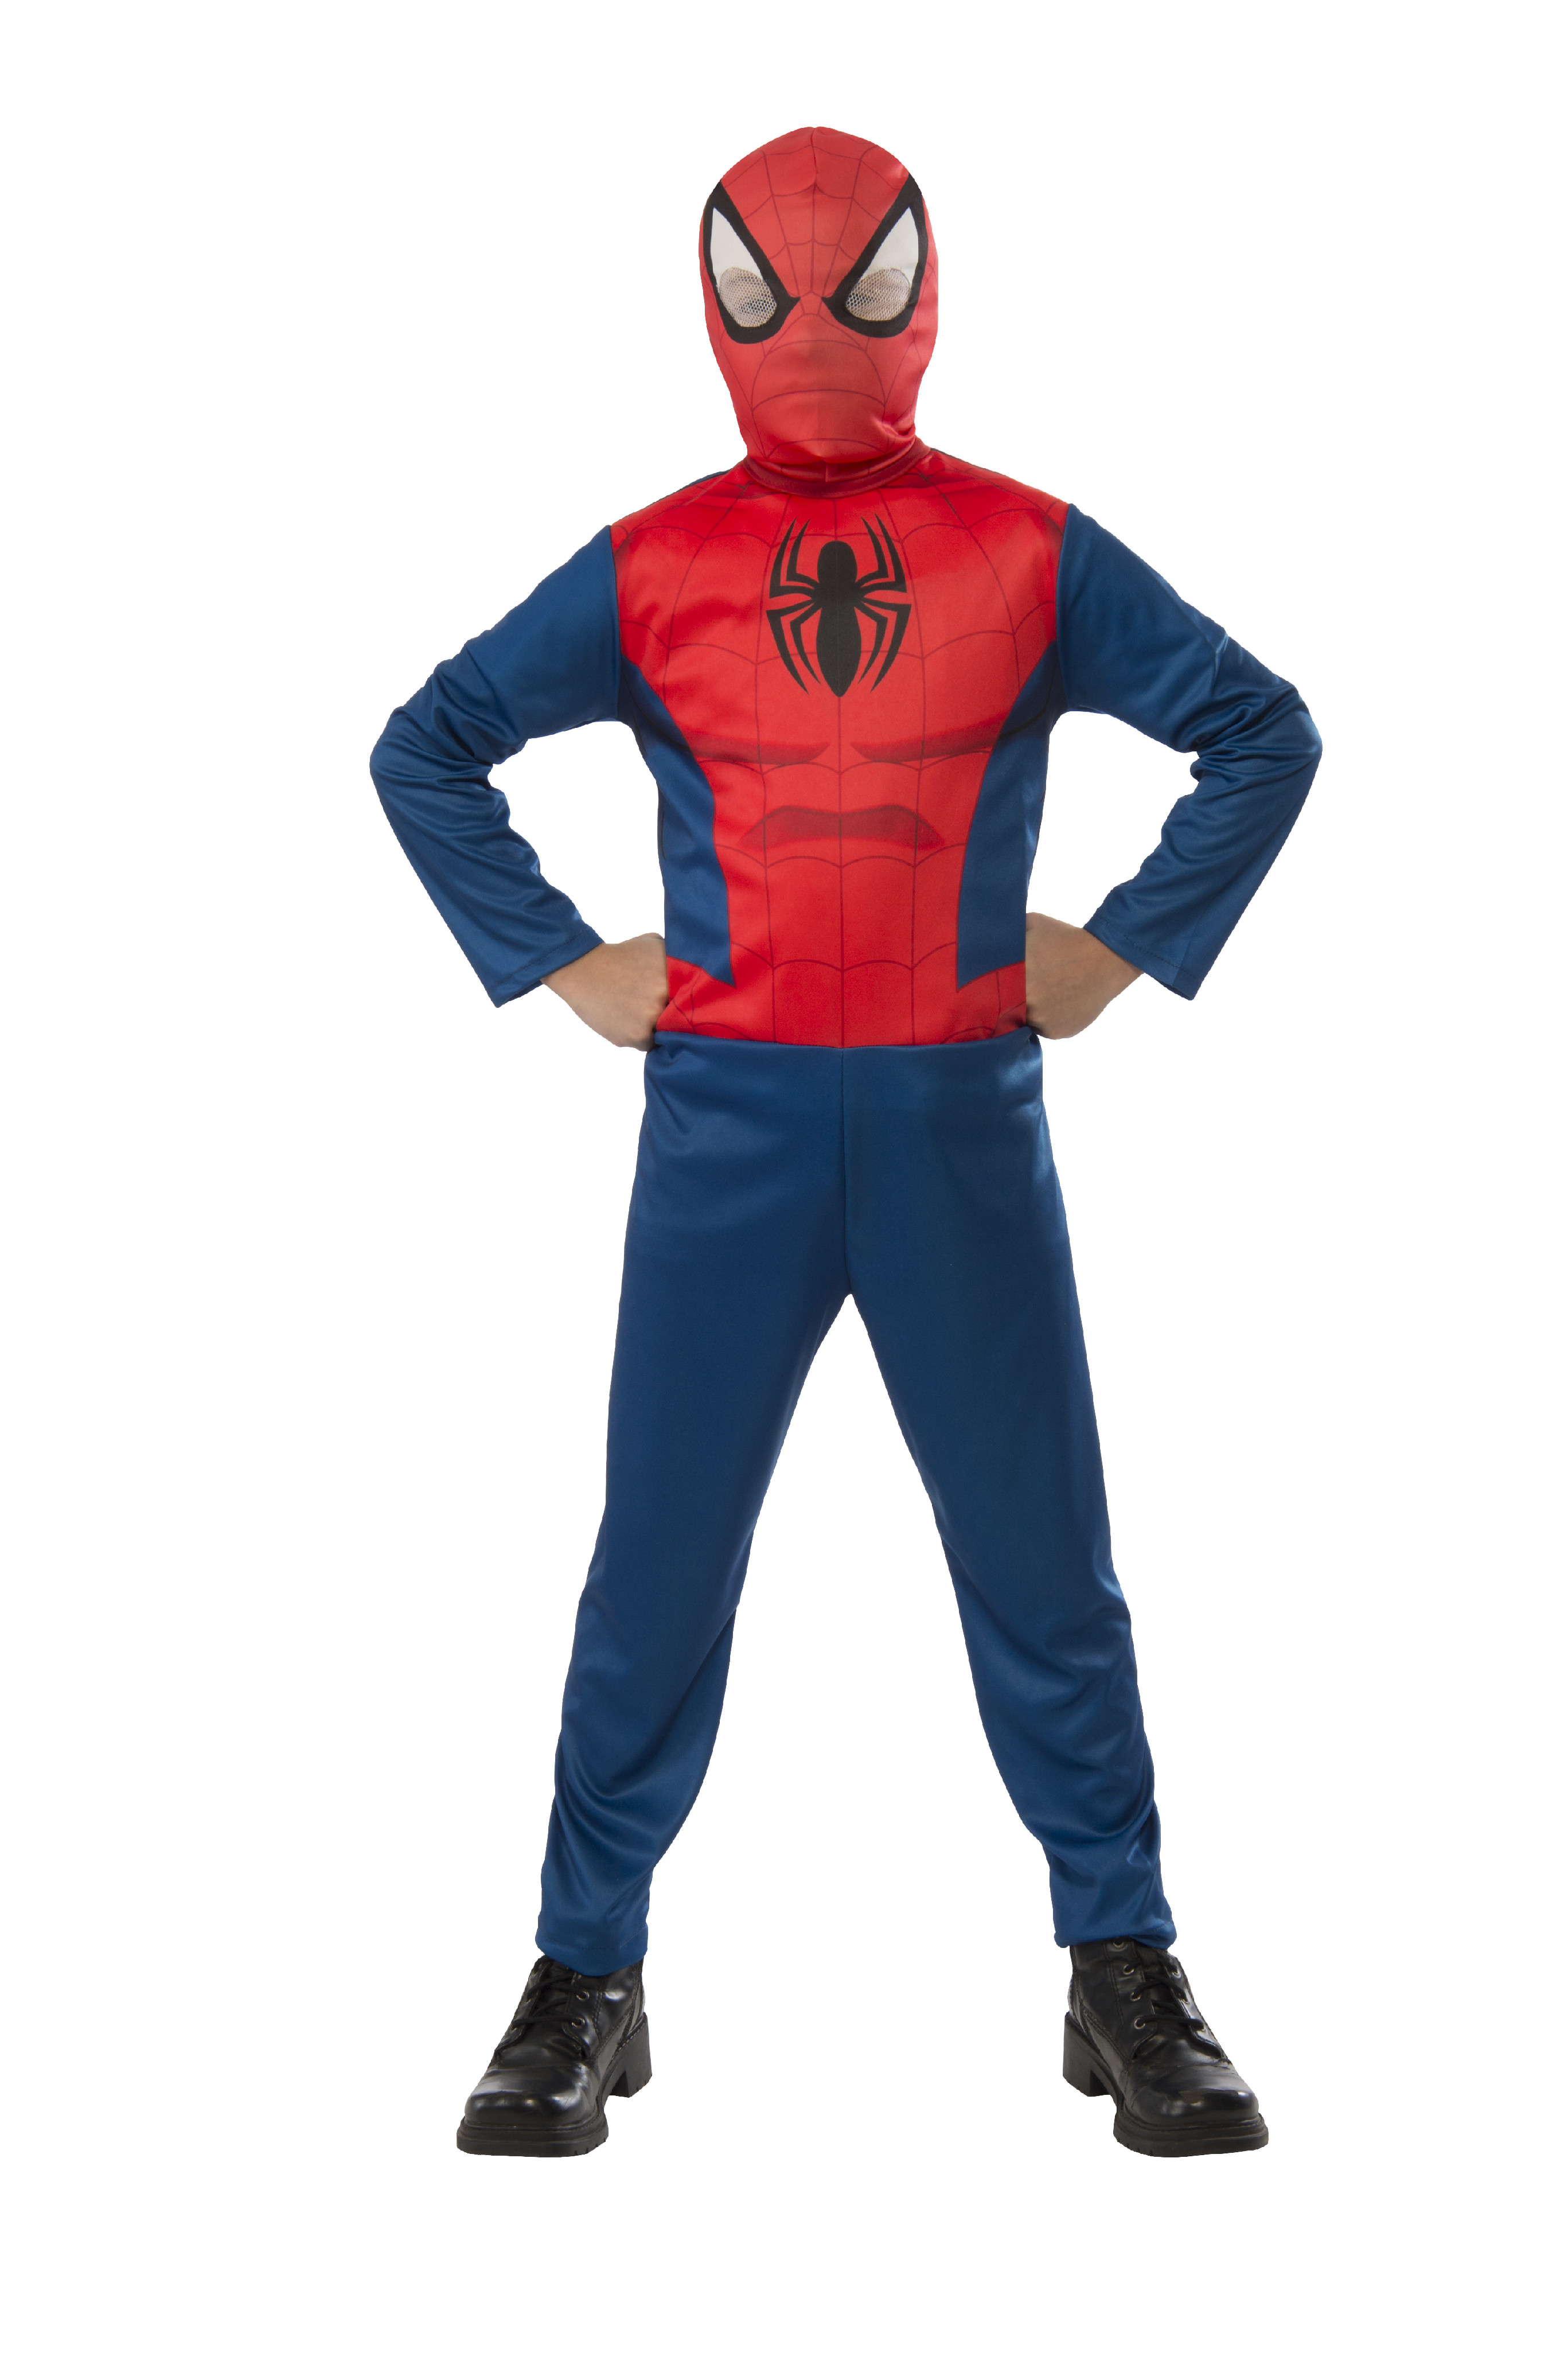 Rubies Dětský kostým s maskou - Spiderman Velikost - děti: L